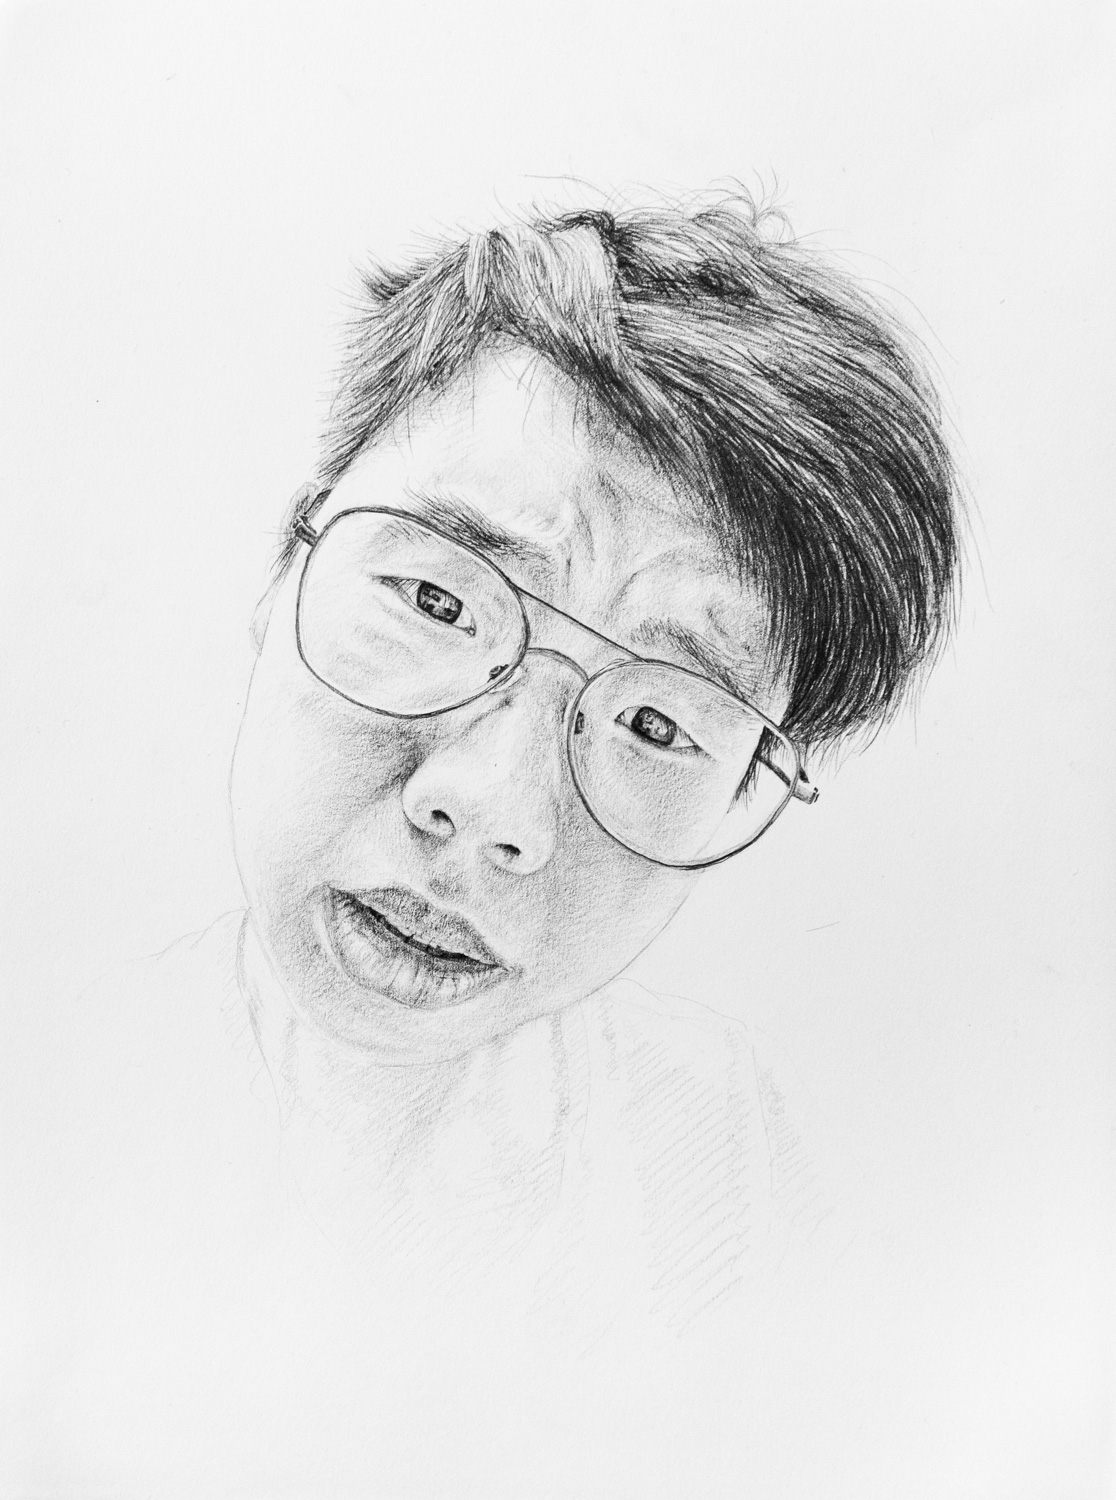 Self portrait in graphite.